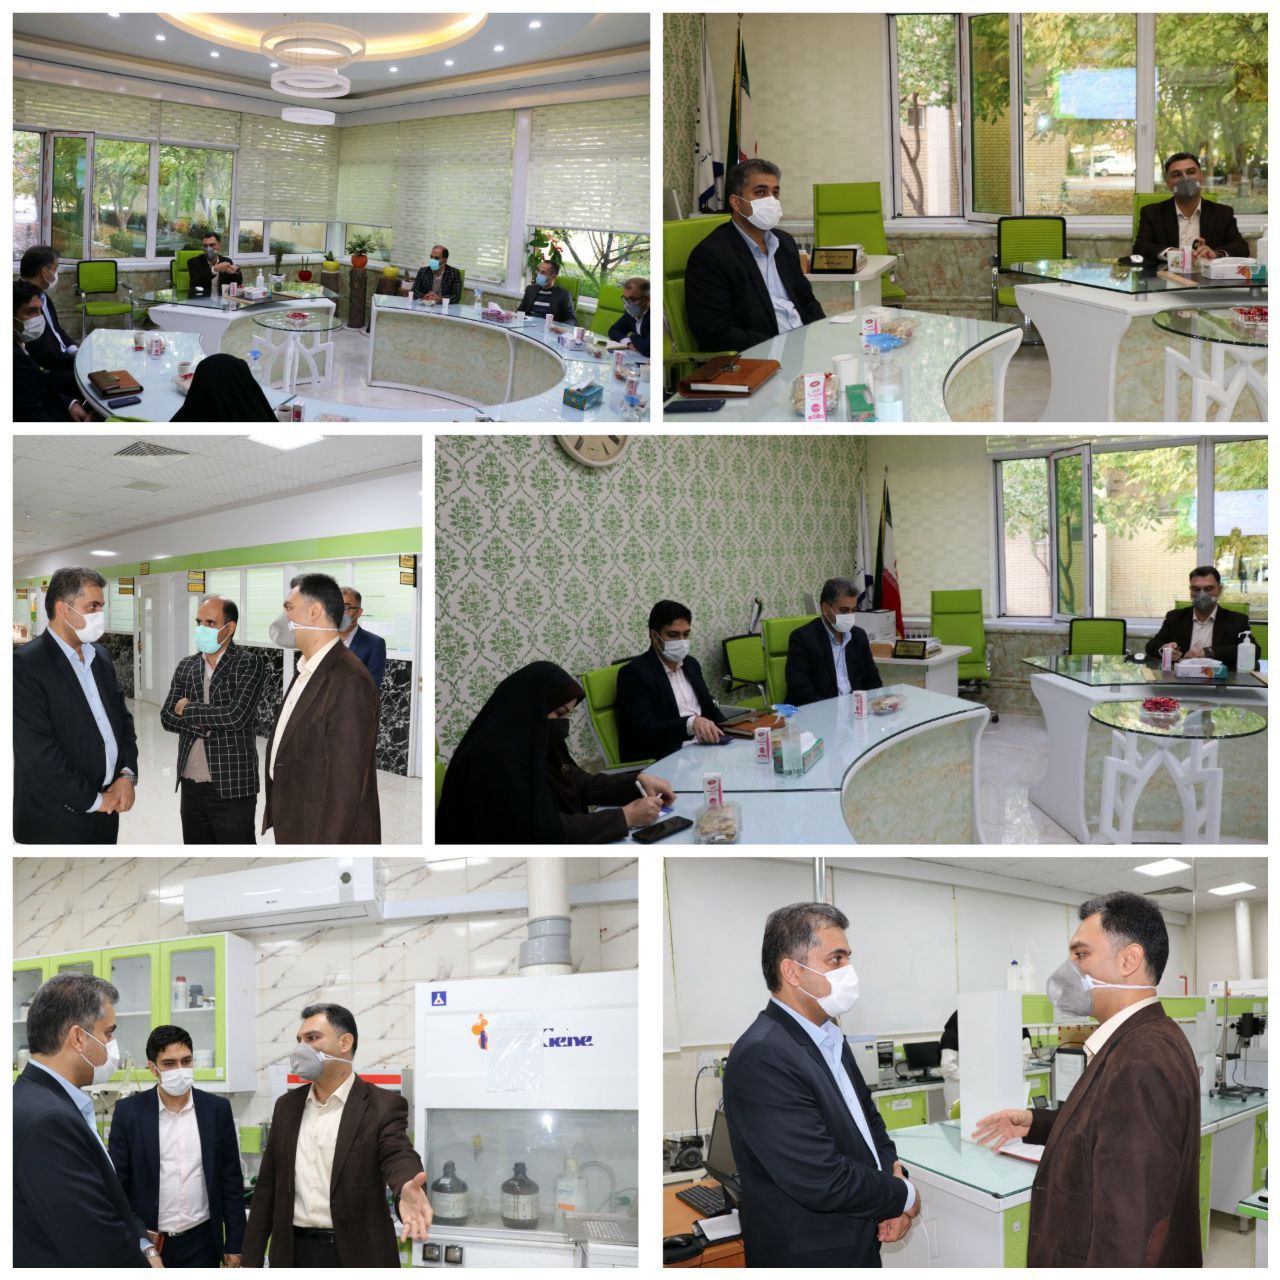 ماموریت اصلی پارک علم و فناوری کرمانشاه توسعه منطقه ای مبتنی بر فناوری است